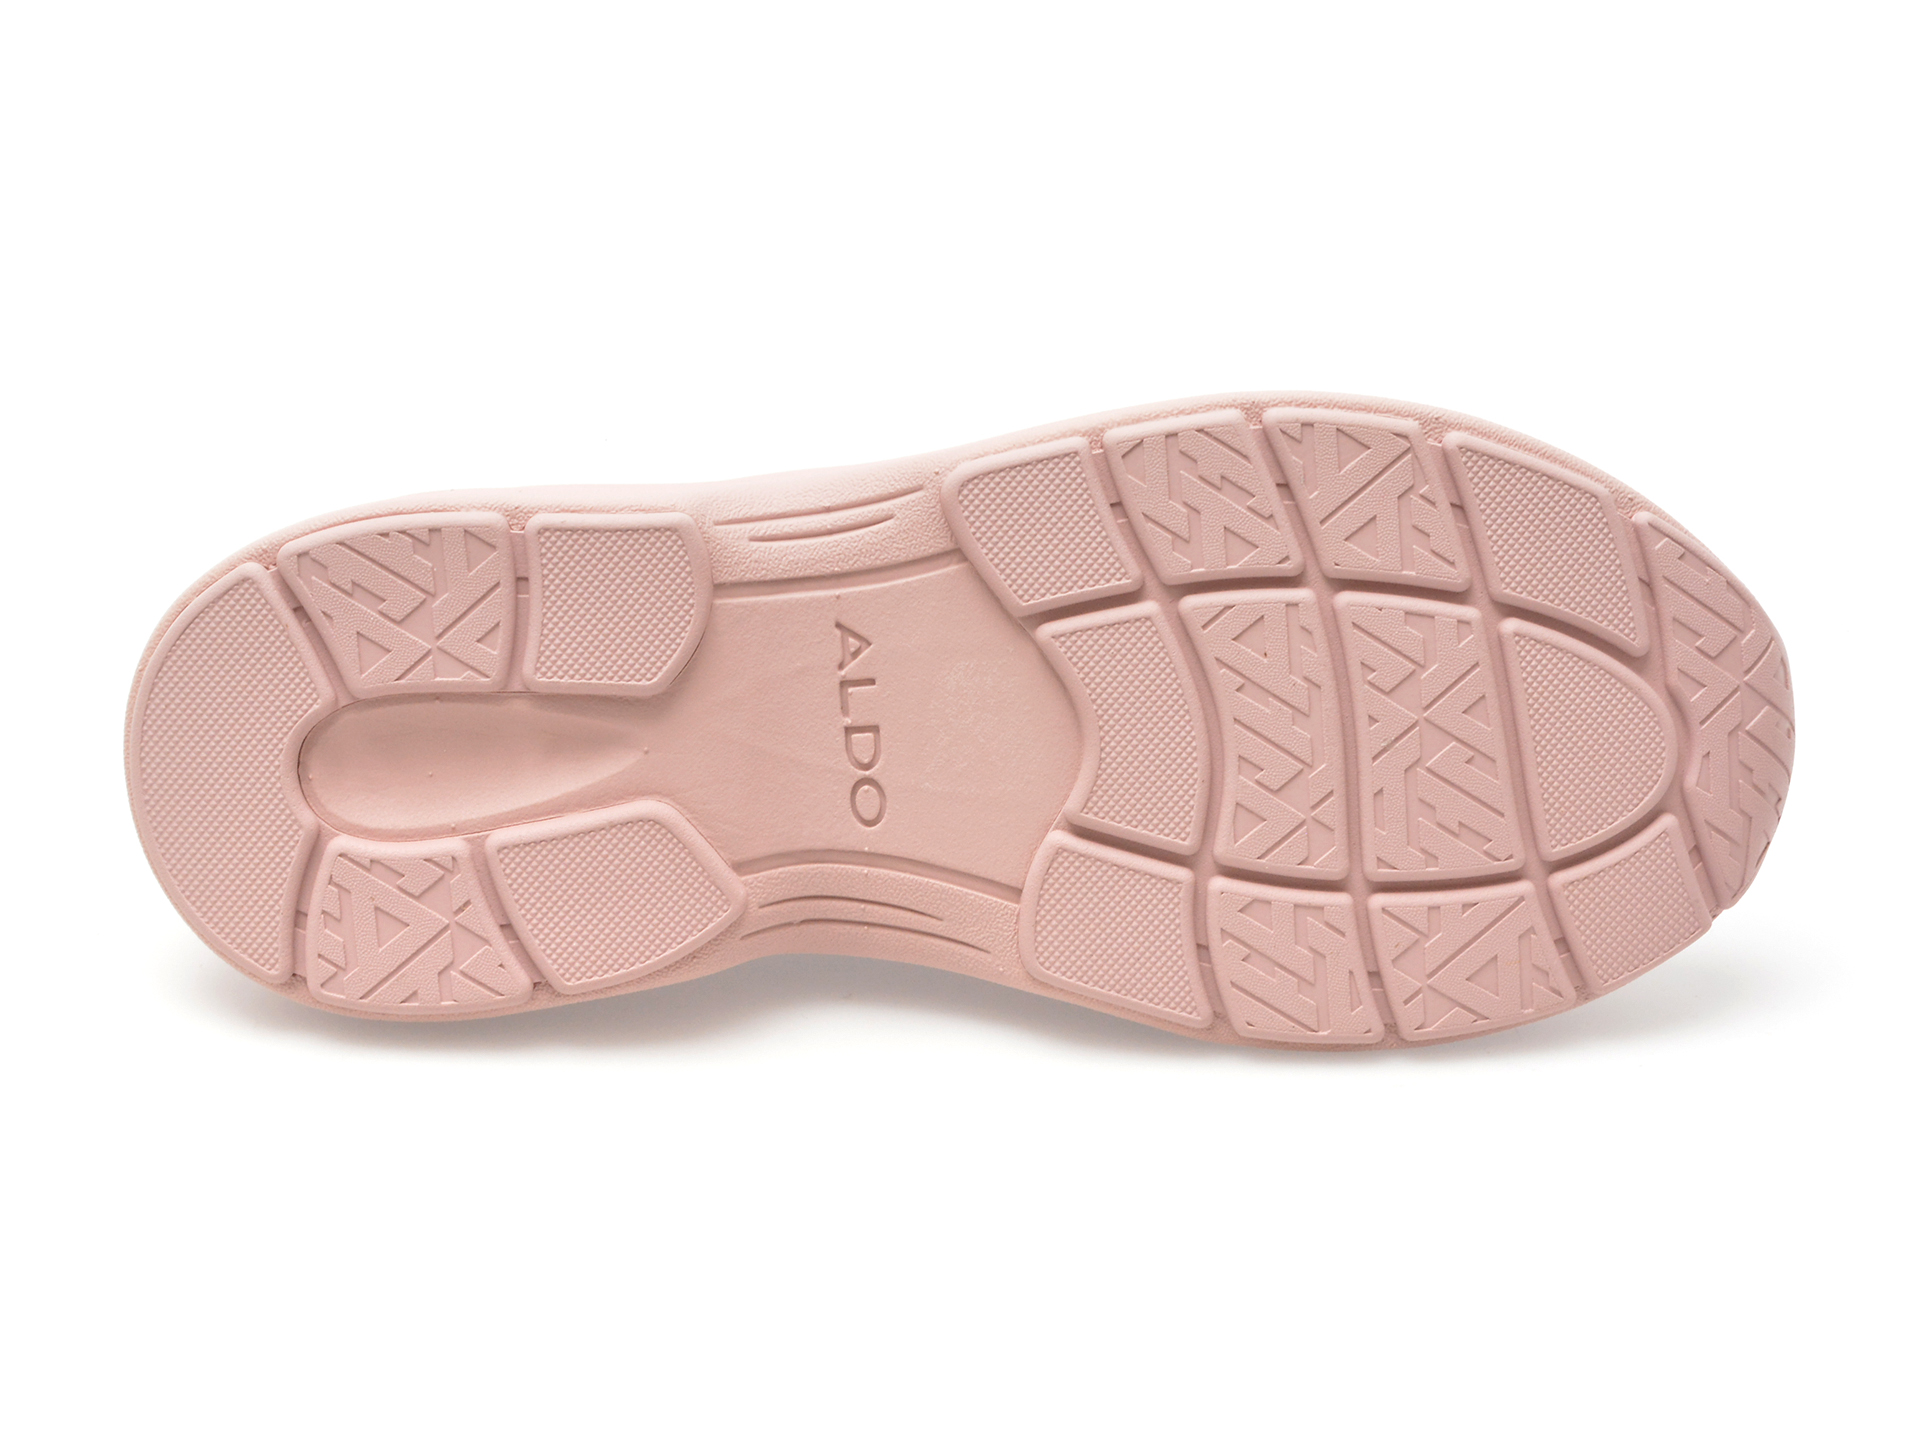 Pantofi sport ALDO roz, ALLDAY650, din material textil